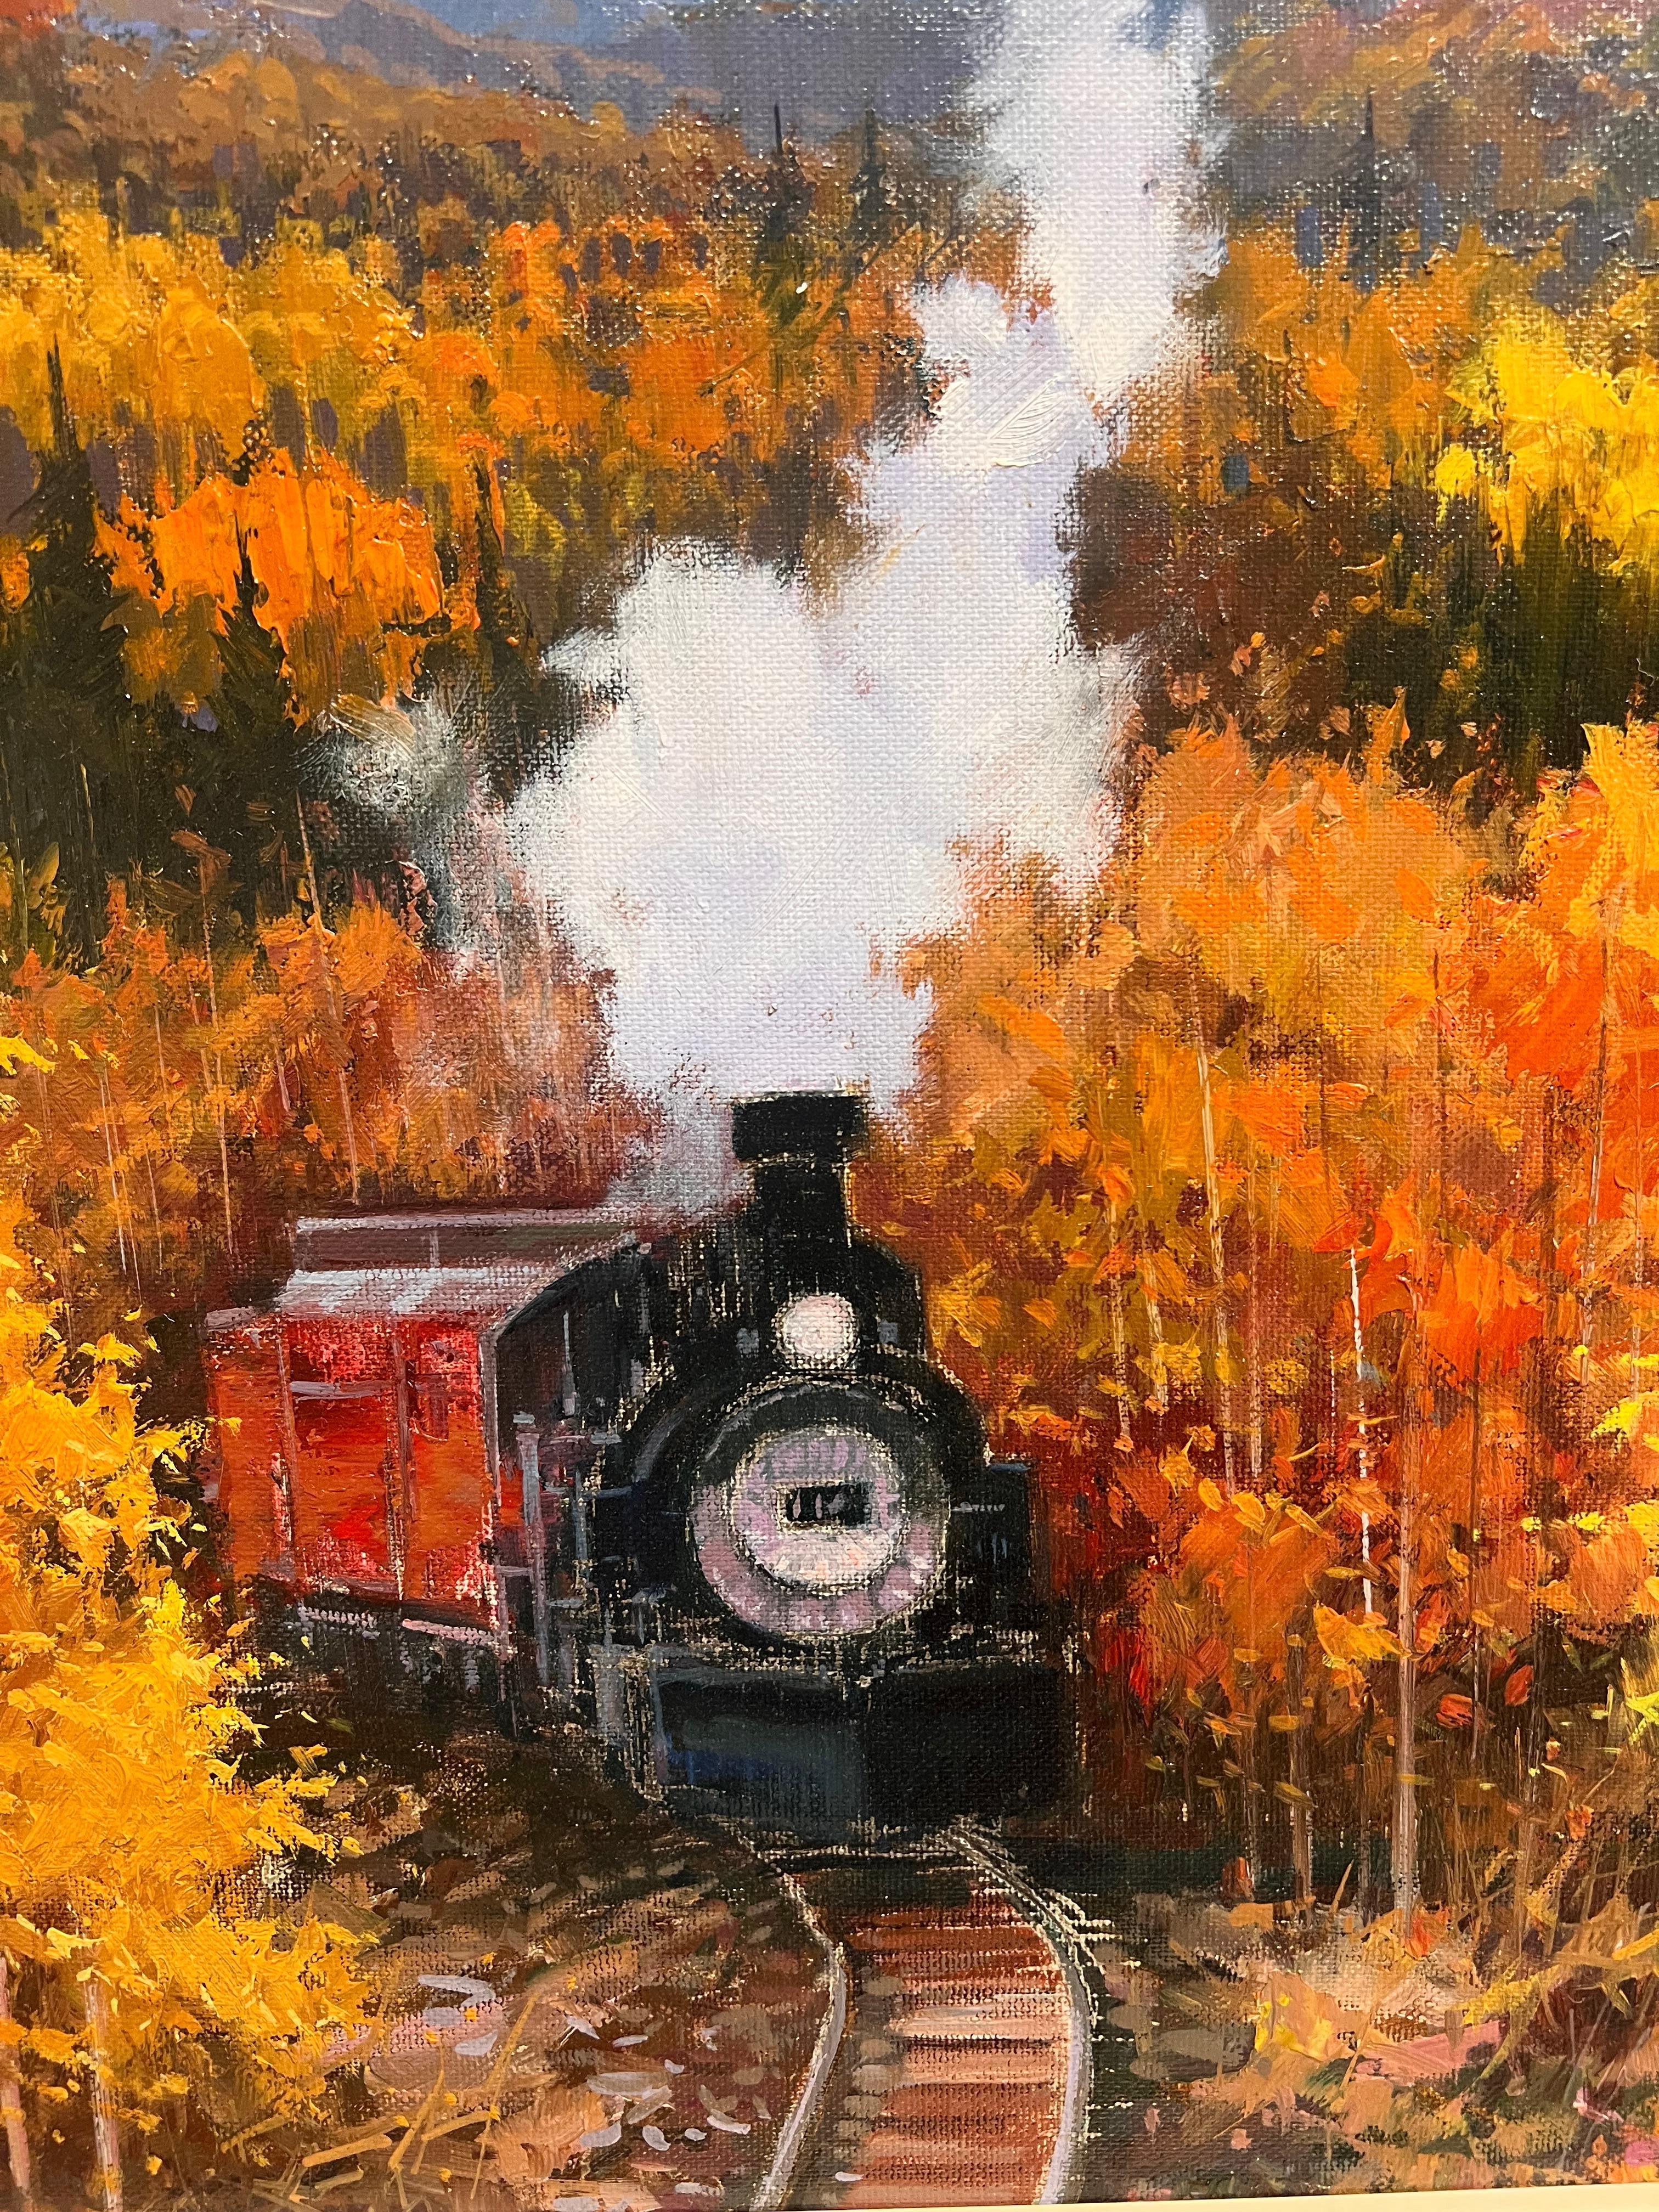 Ferrocaril en Nuevo Mexico (Railway in New Mexico)  - Painting by Miguel Peidro